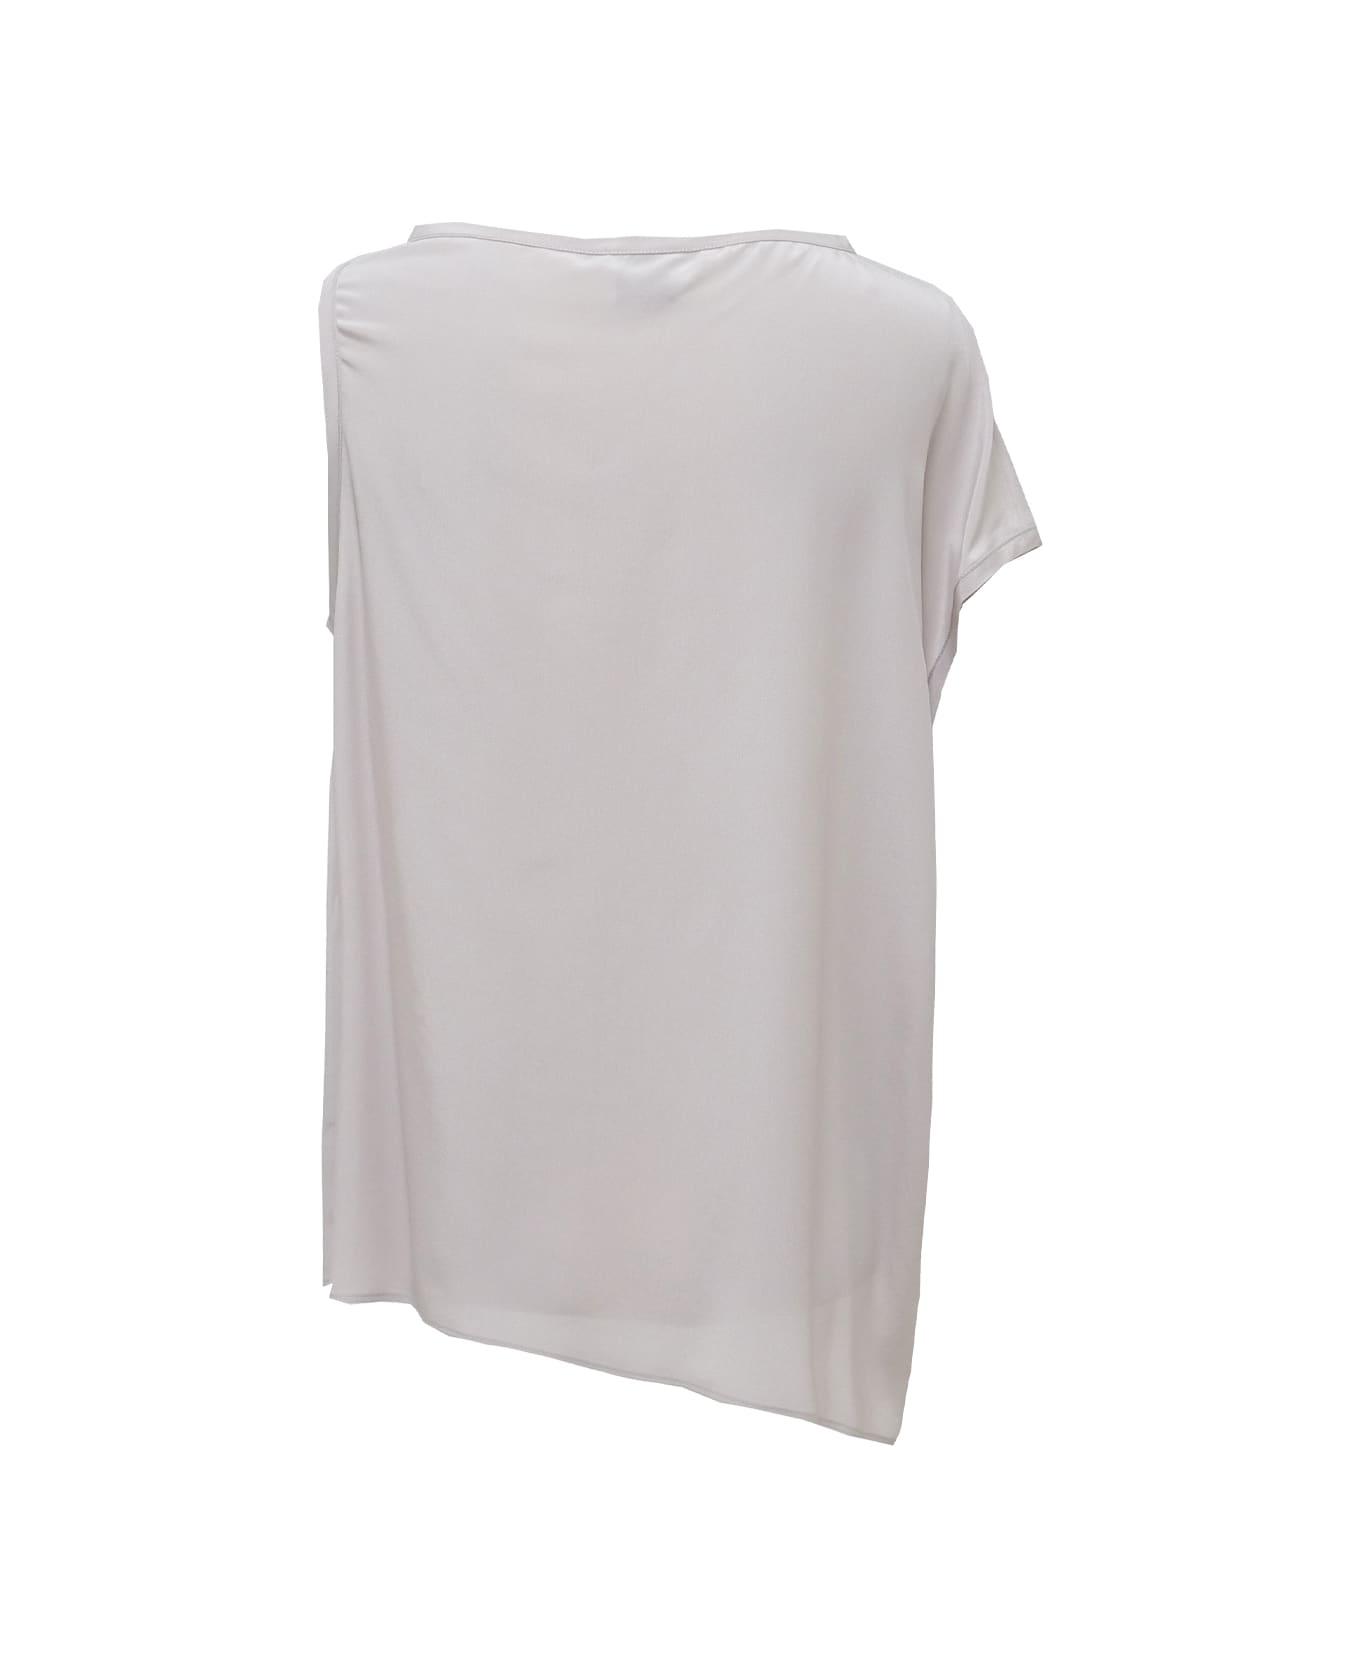 Alysi Shirt - White